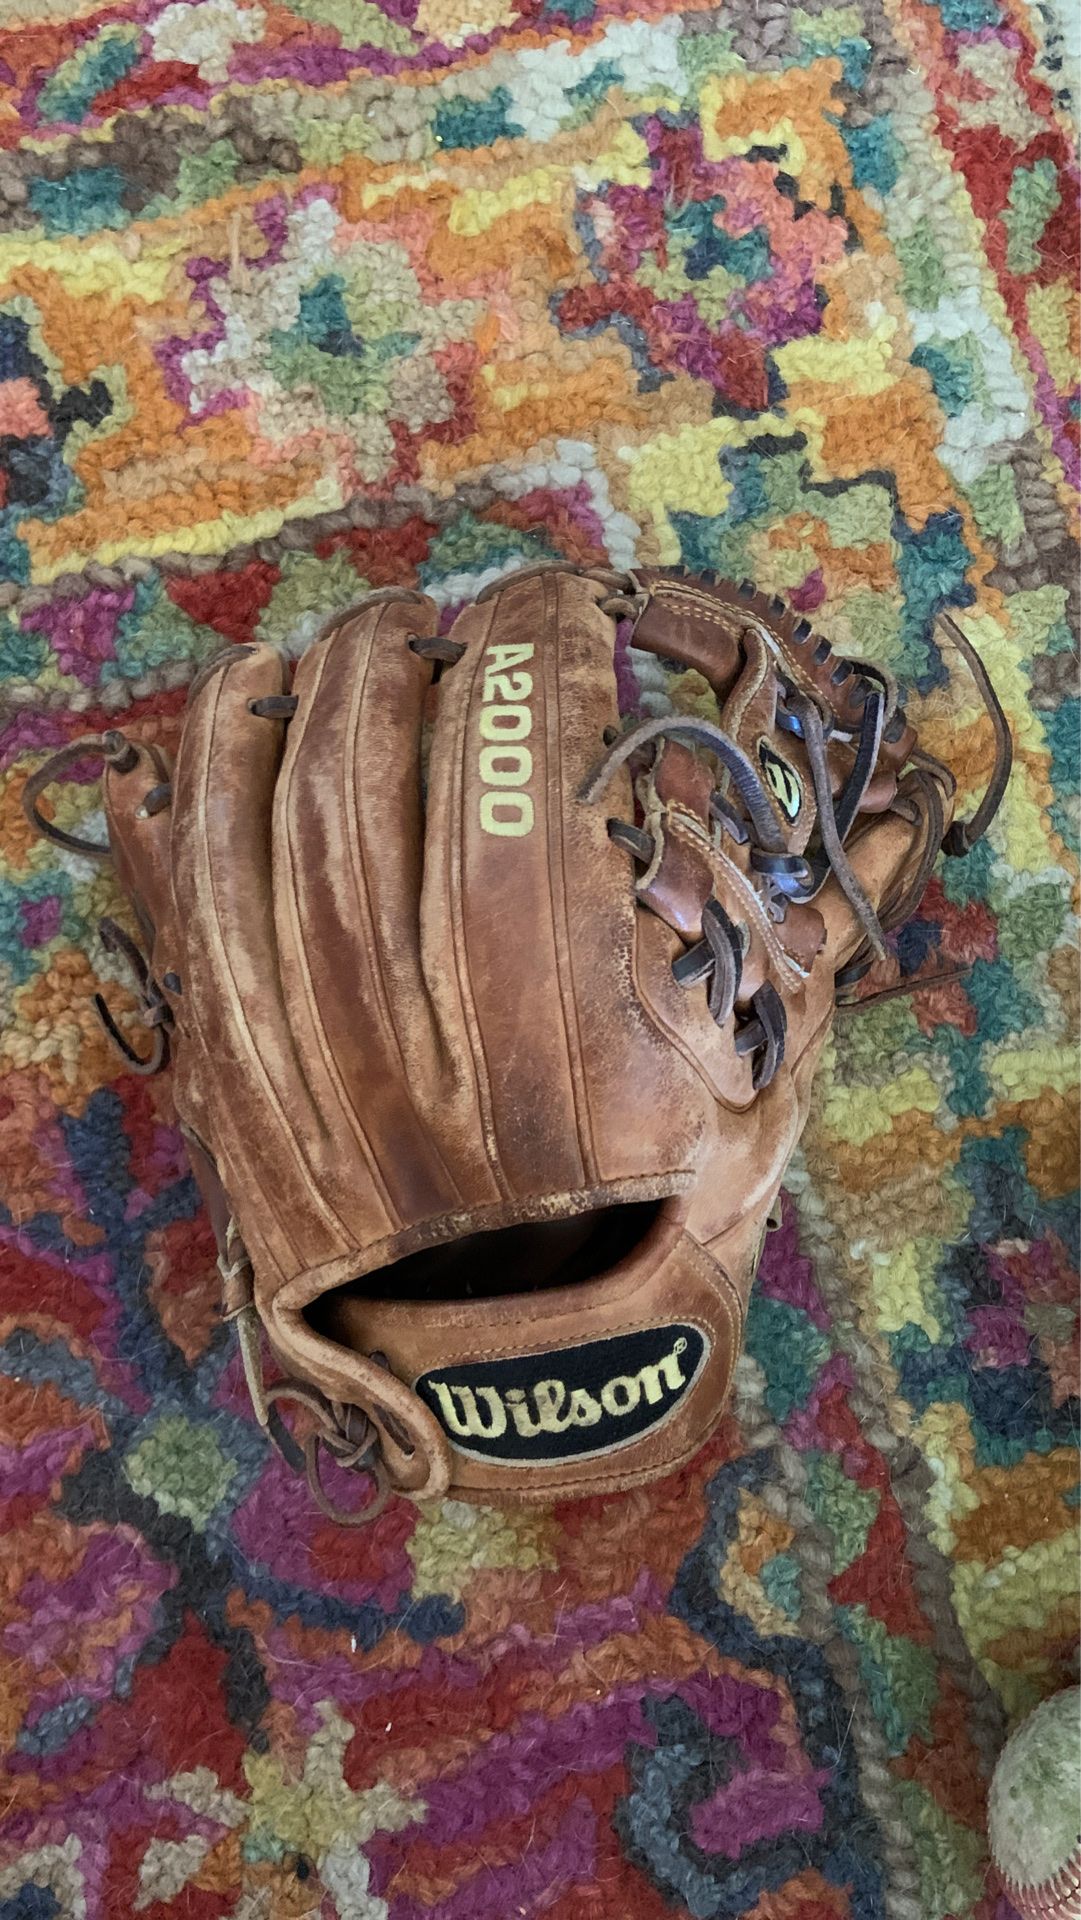 DP15 11.5” baseball glove